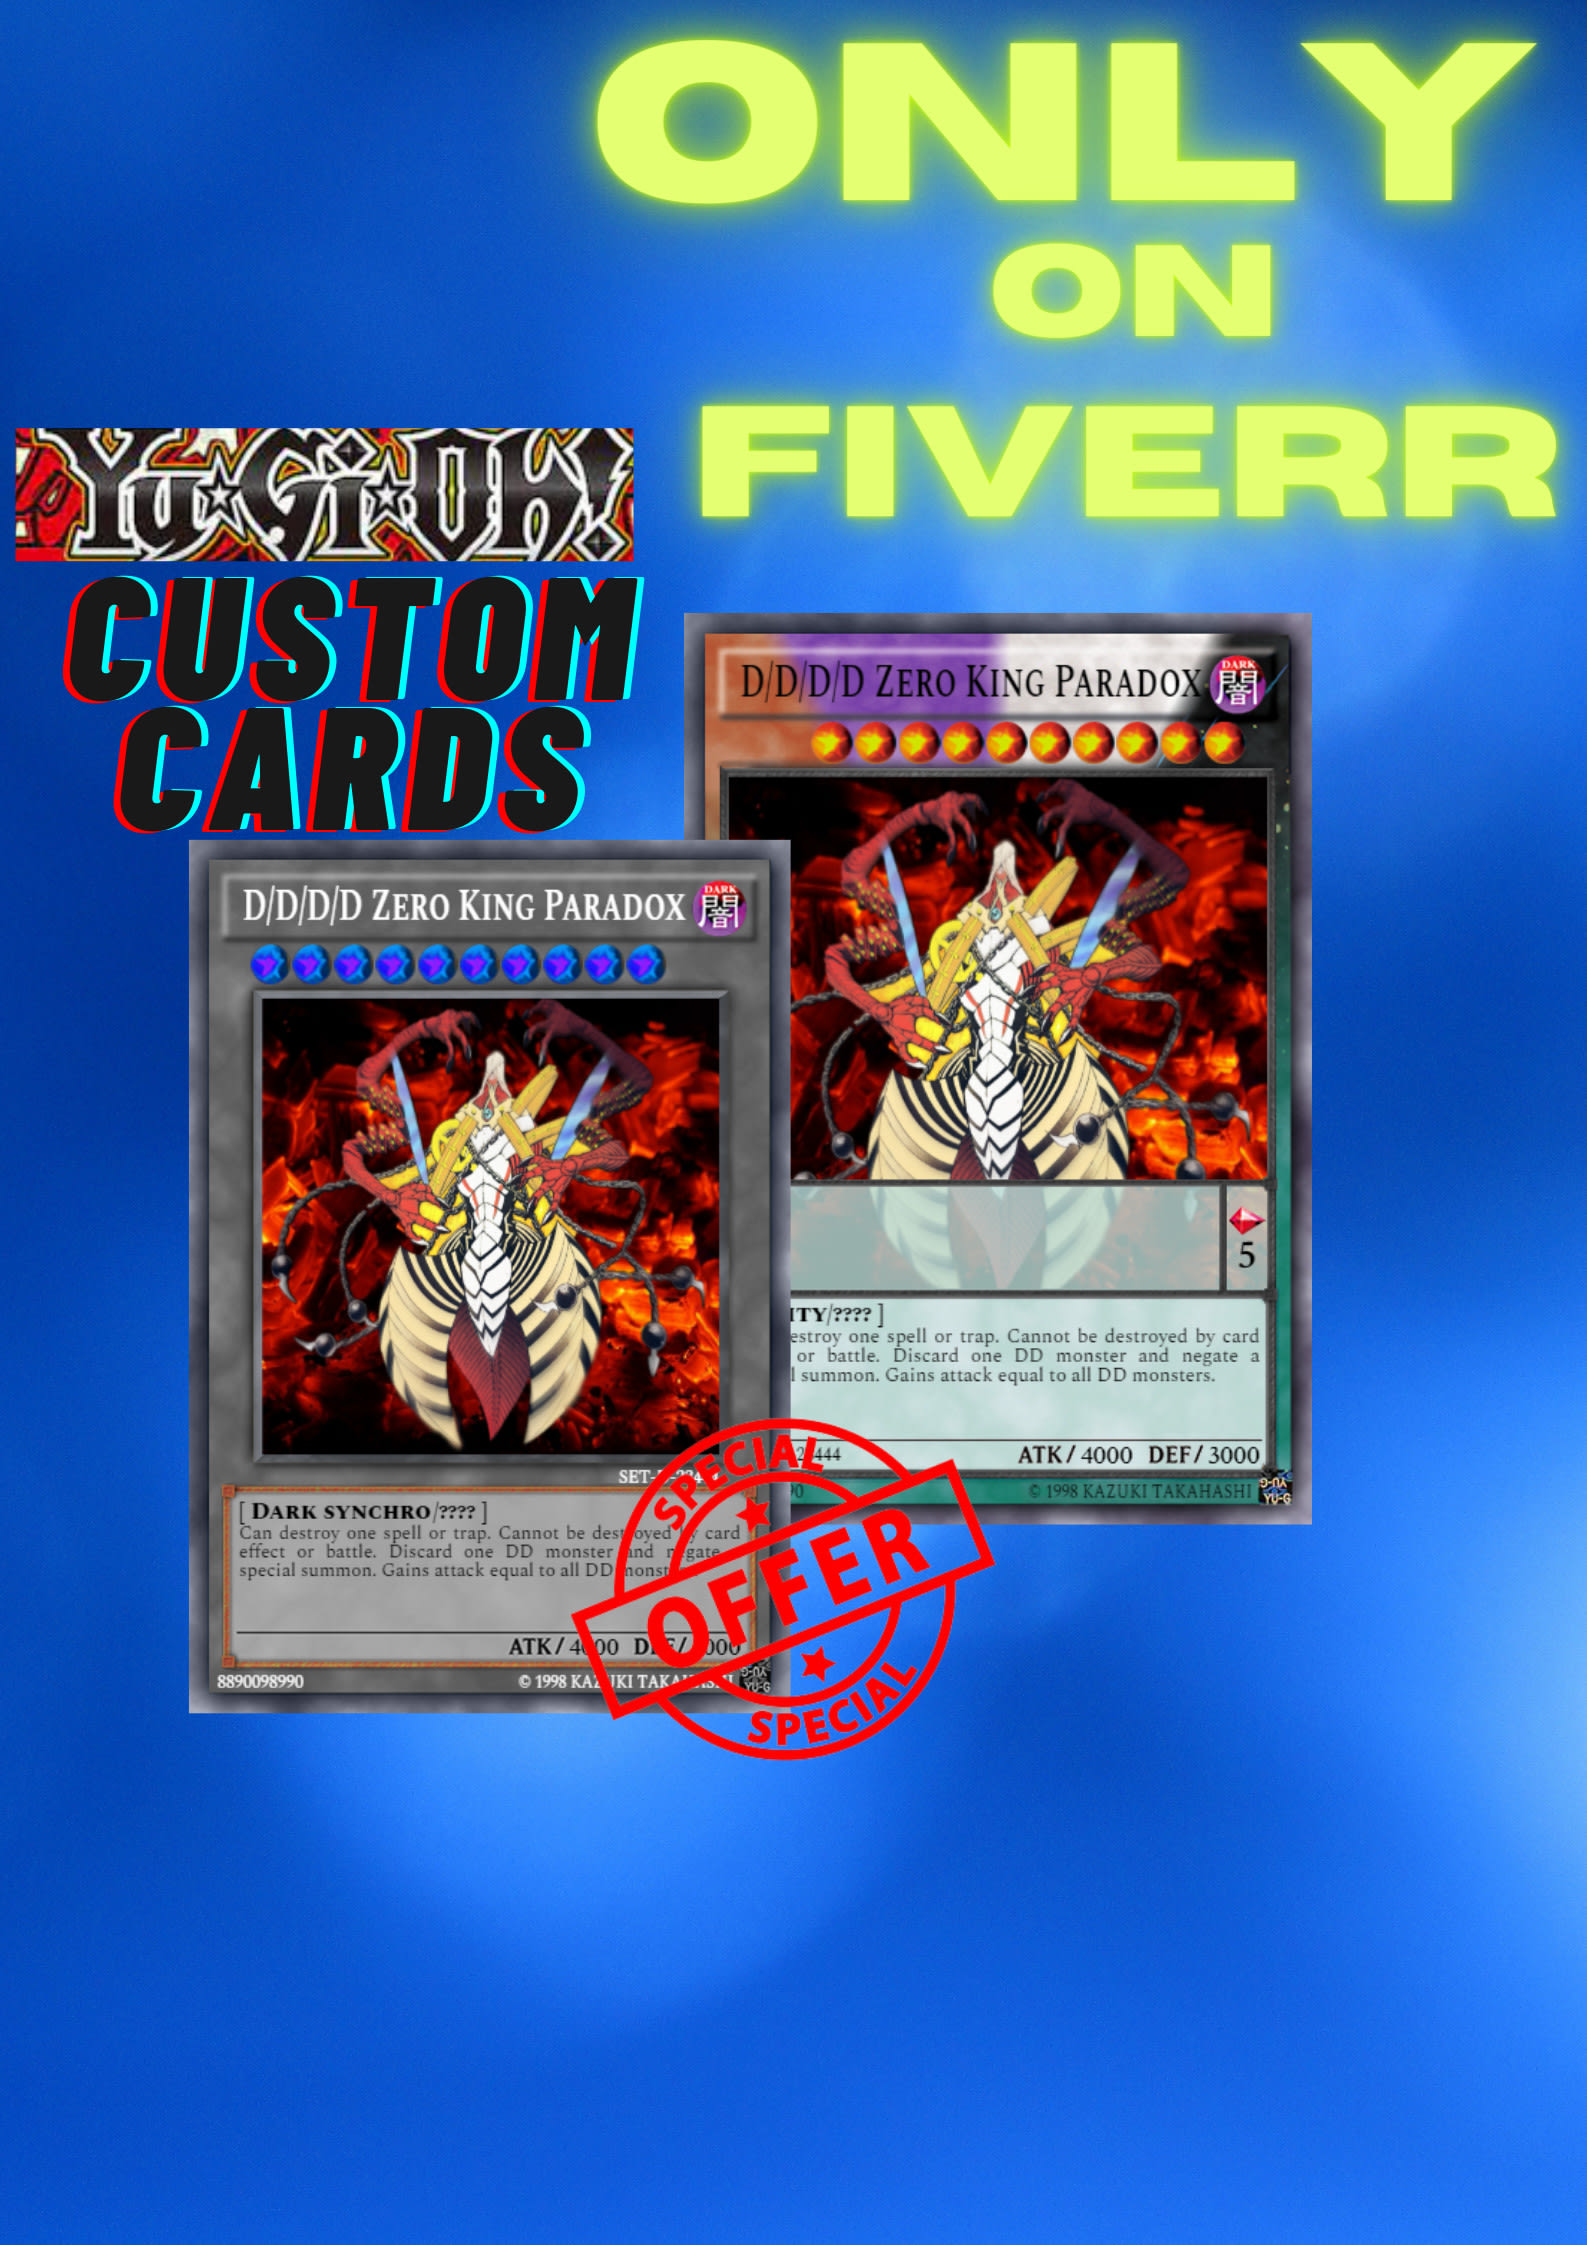 Pochette Transparente pour Cartes Pokémon et Yugioh magic etc